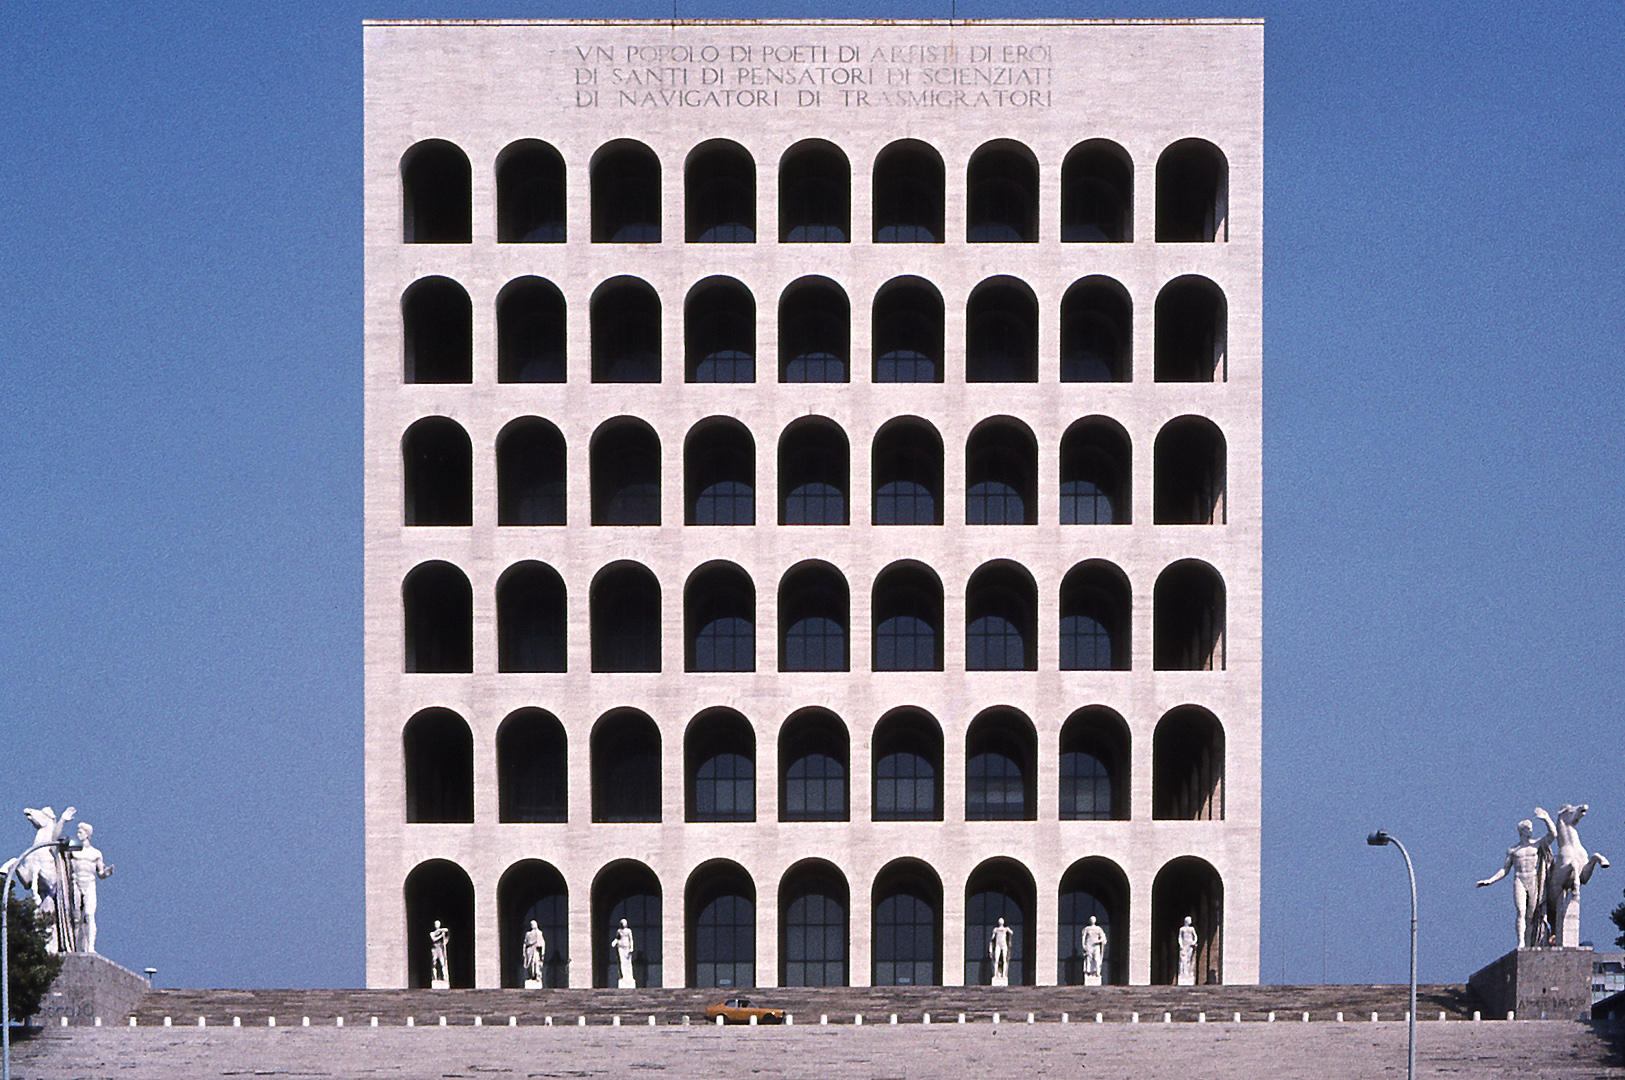 Paleis der Arbeidscultuur (Rome); Palazzo della Civilt del Lavoro